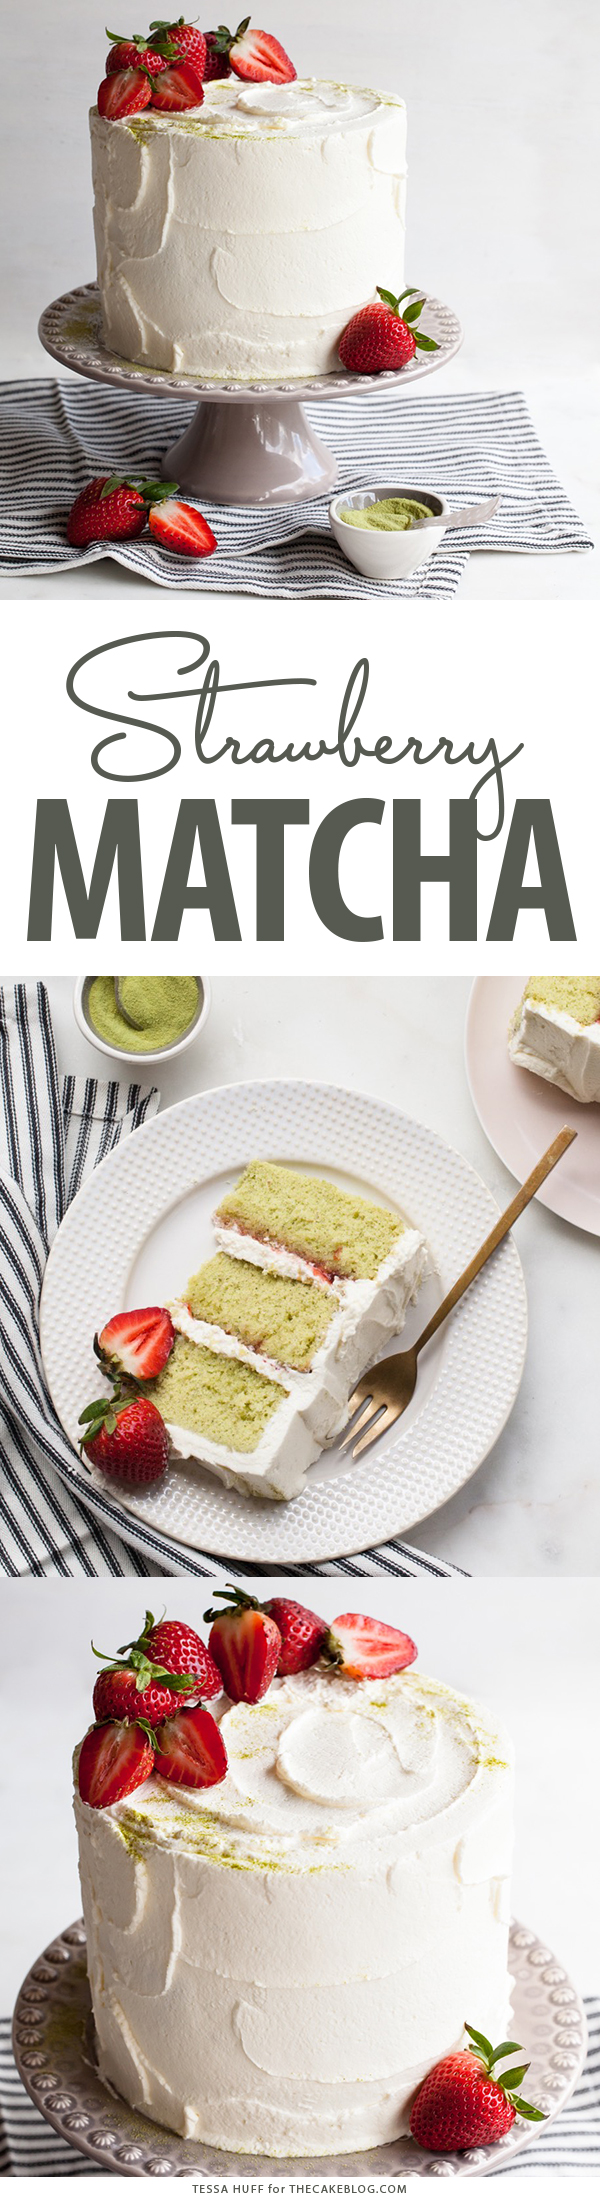 Matcha Strawberry Cake | by Tessa Huff for TheCakeBlog.com